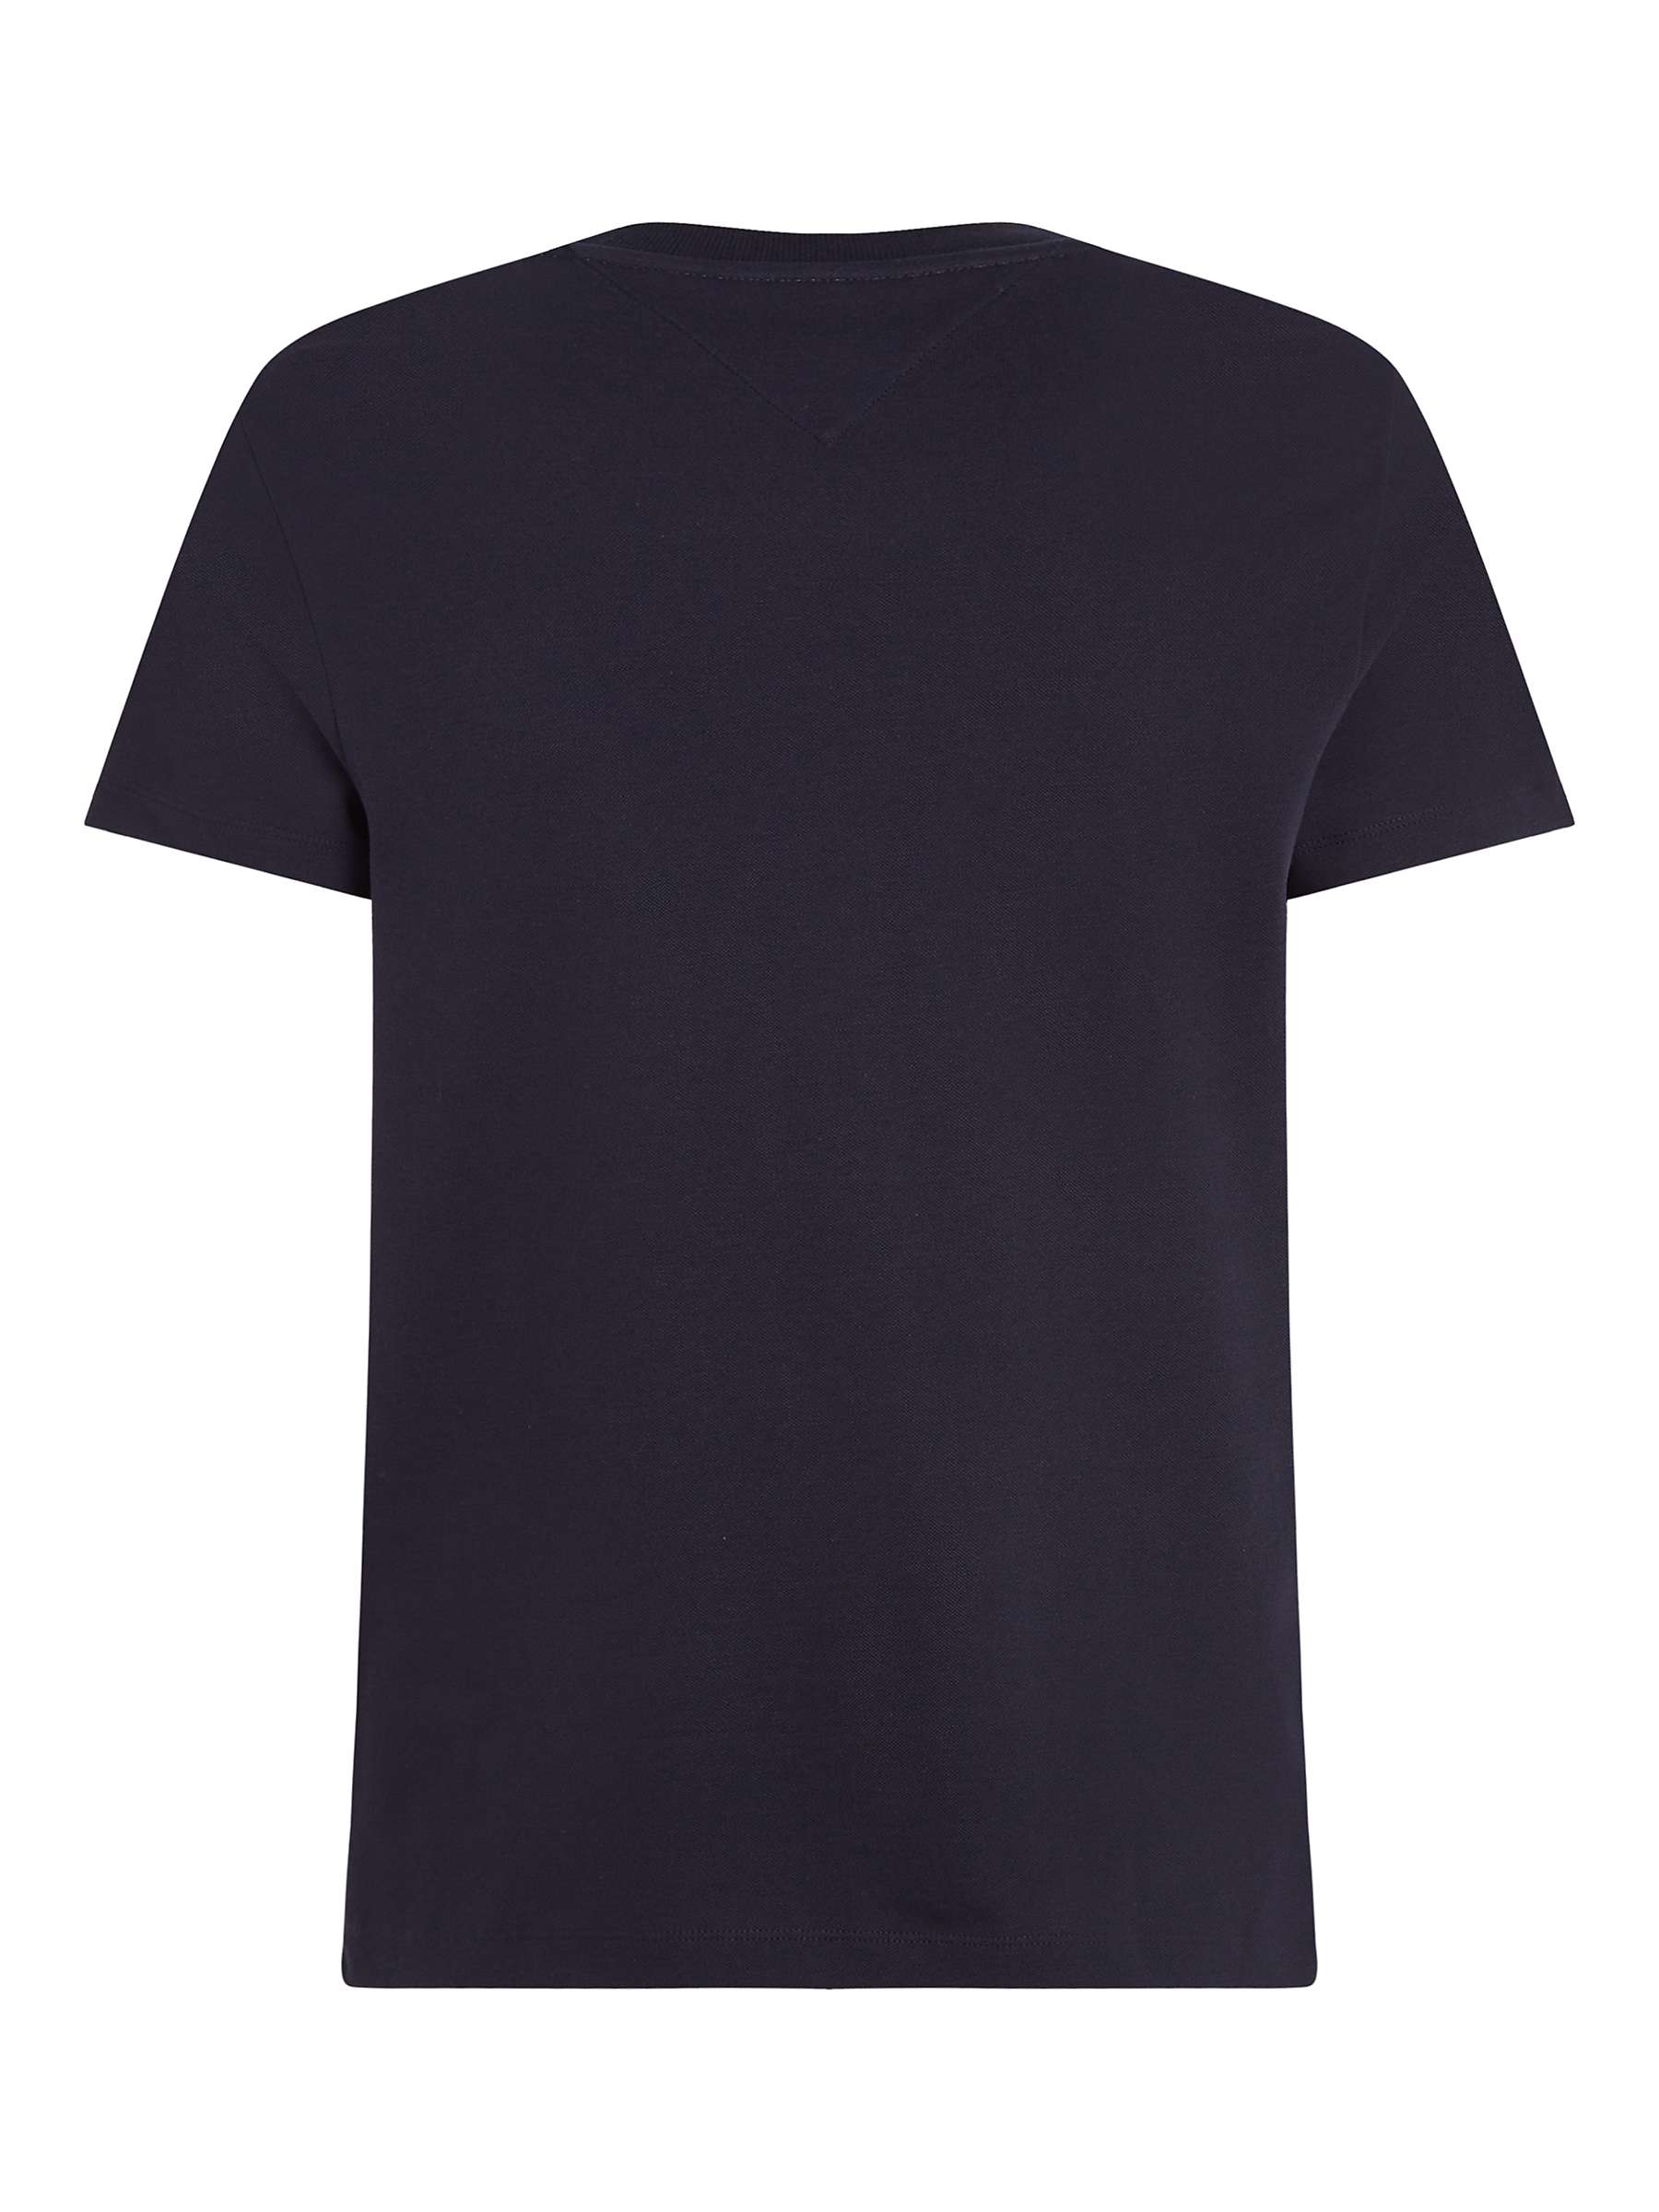 Buy Tommy Hilfiger Pique T-Shirt Online at johnlewis.com